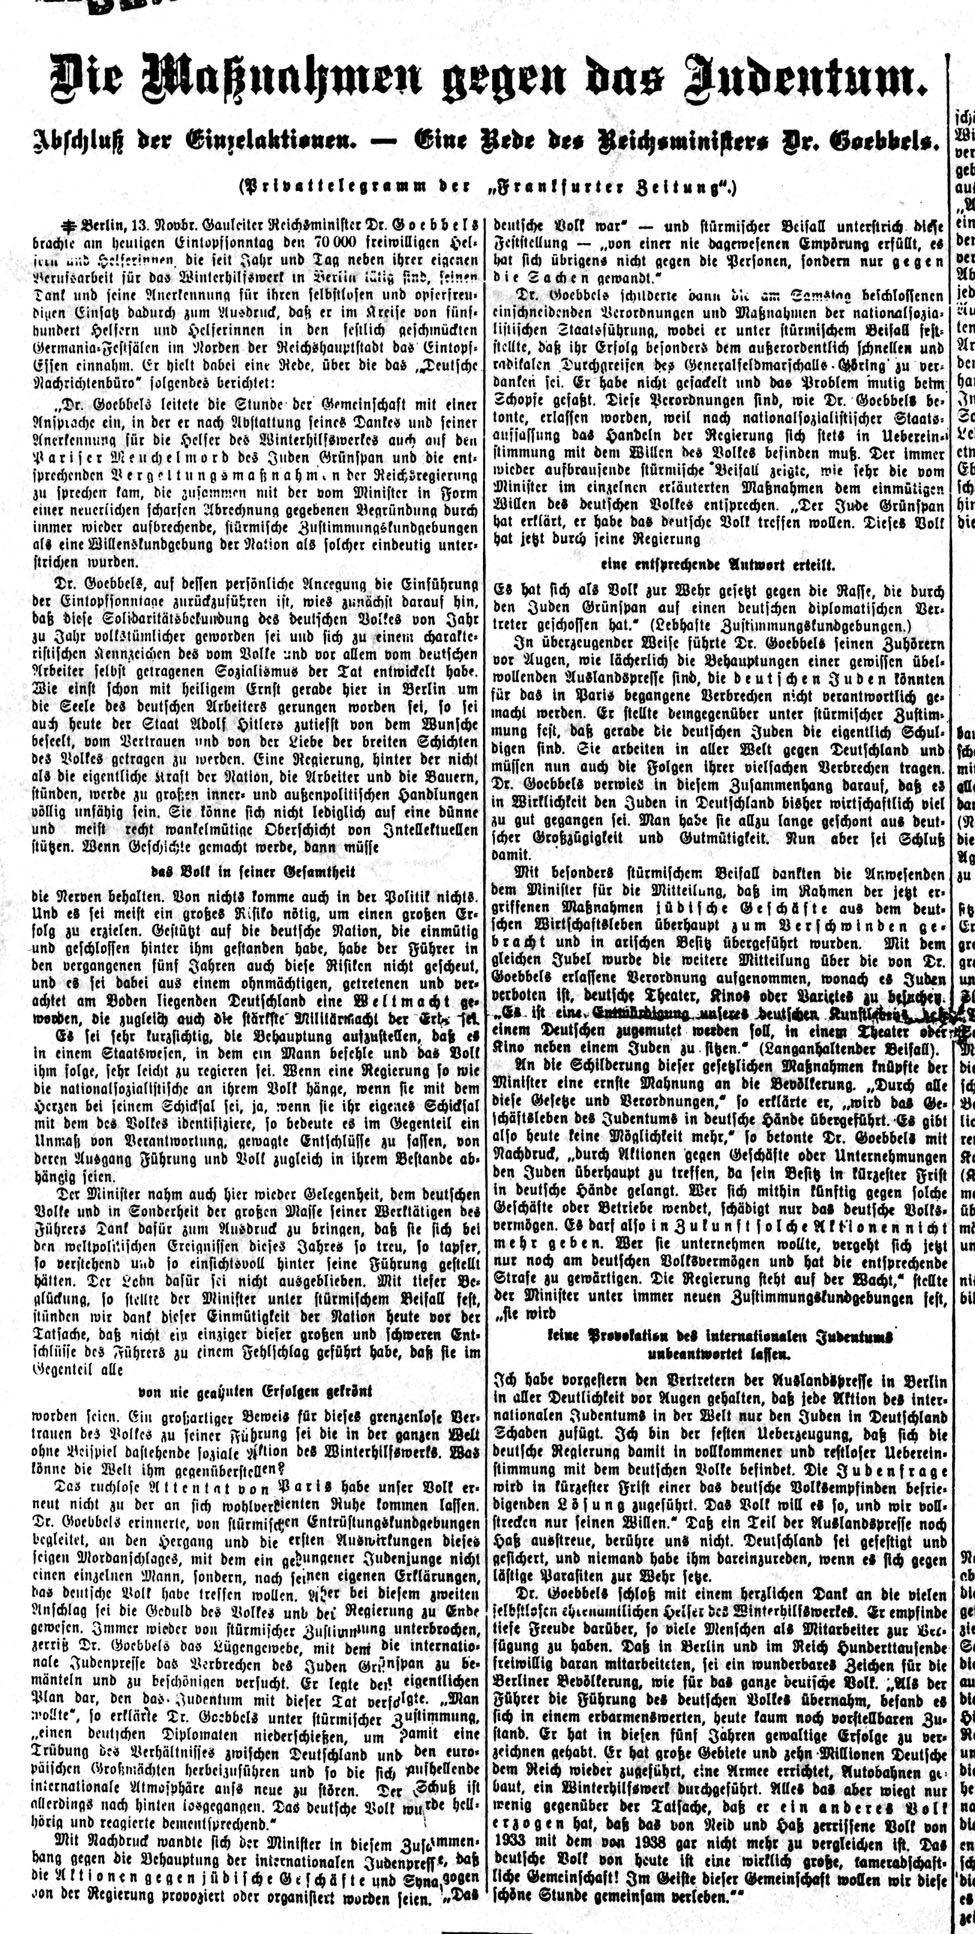 : Die Frankfurter Zeitung wurde 1856 zunächst unter dem Namen Frankfurter Geschäftsbericht gegründet. Dem Grundverständnis nach war sie liberal und demokratisch ausgerichtet.